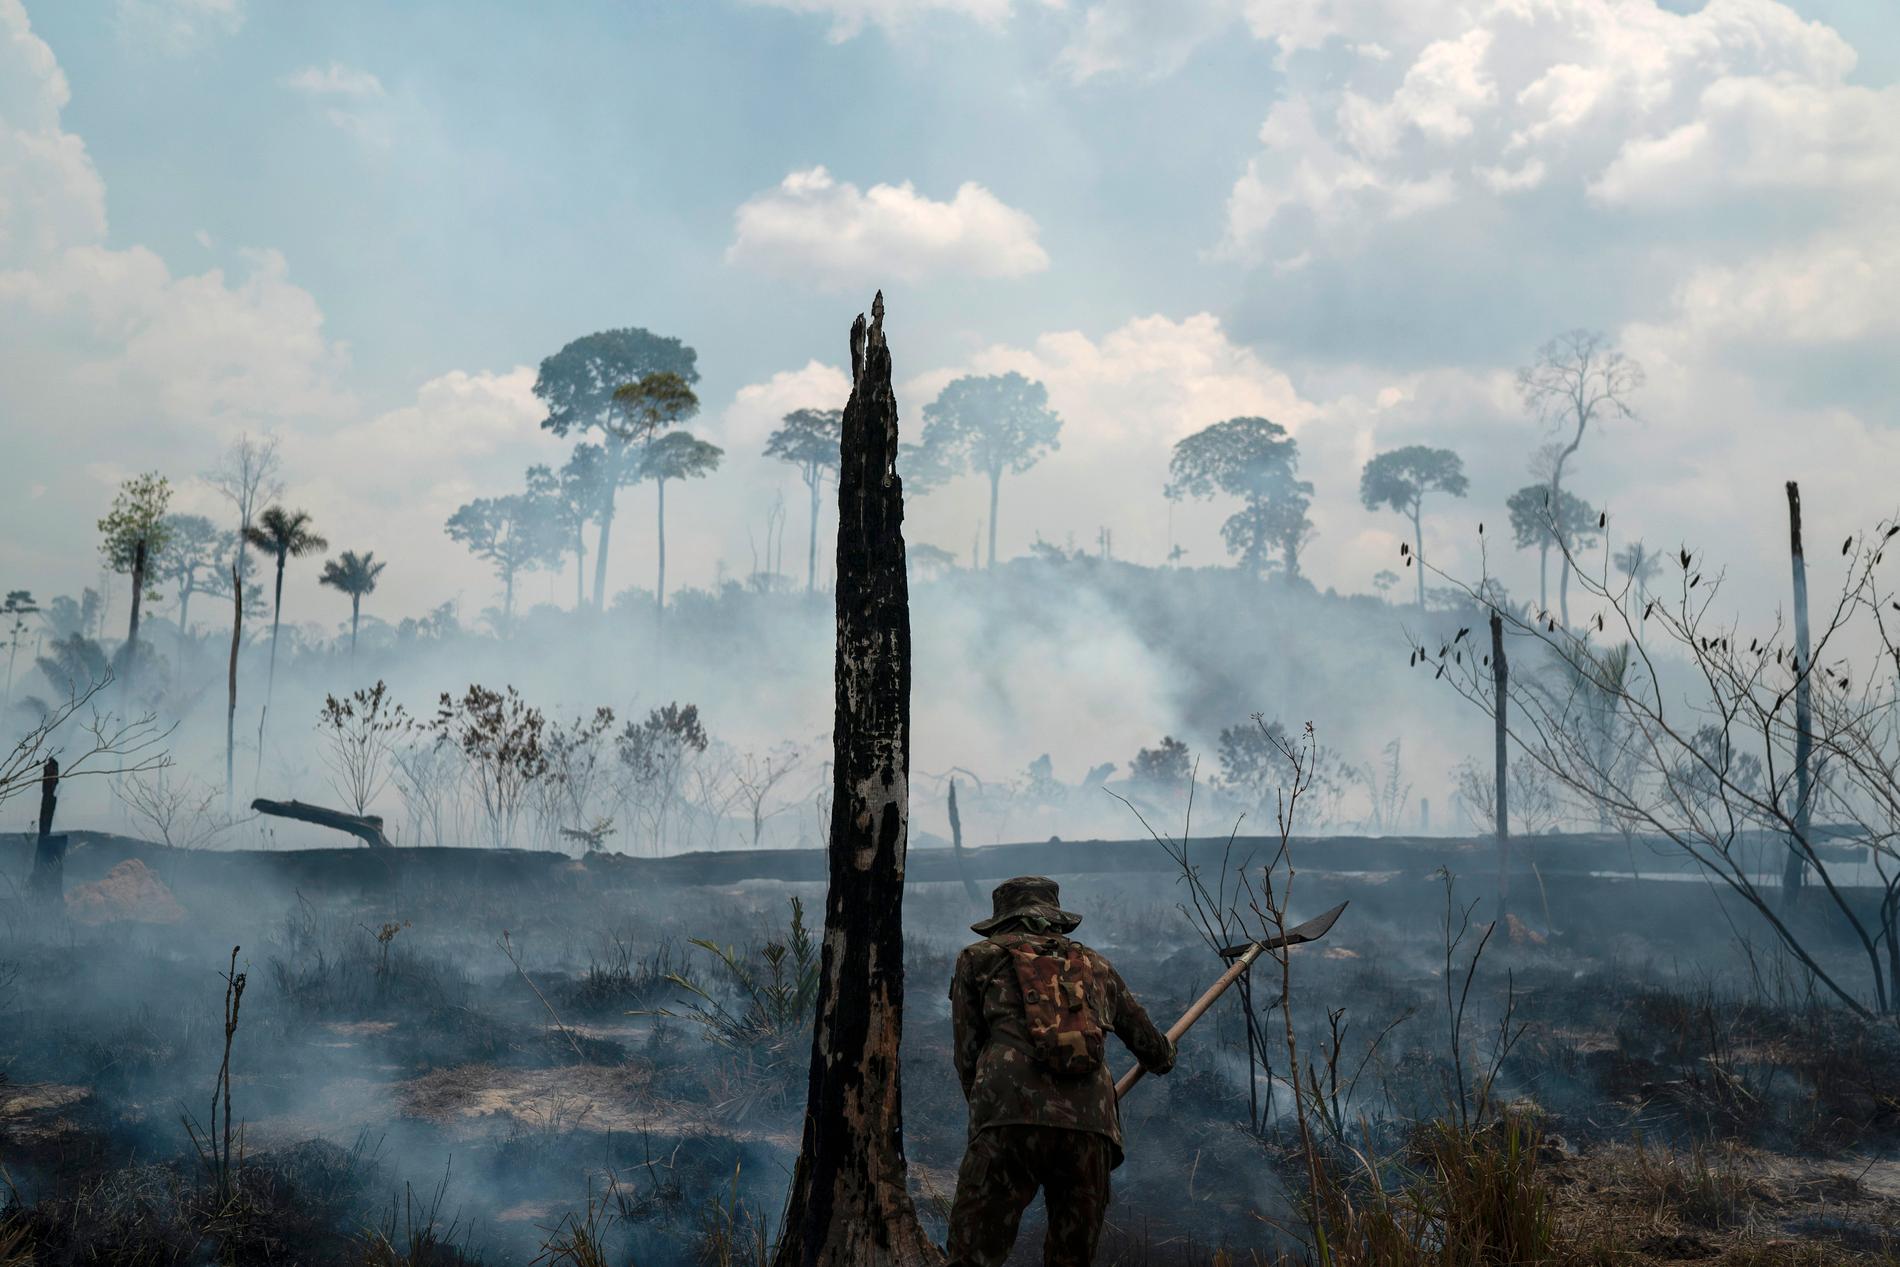 En brasiliansk soldat arbetar med att släcka skogsbranden i regionen Nova Fronteira. Bild från 3 september.